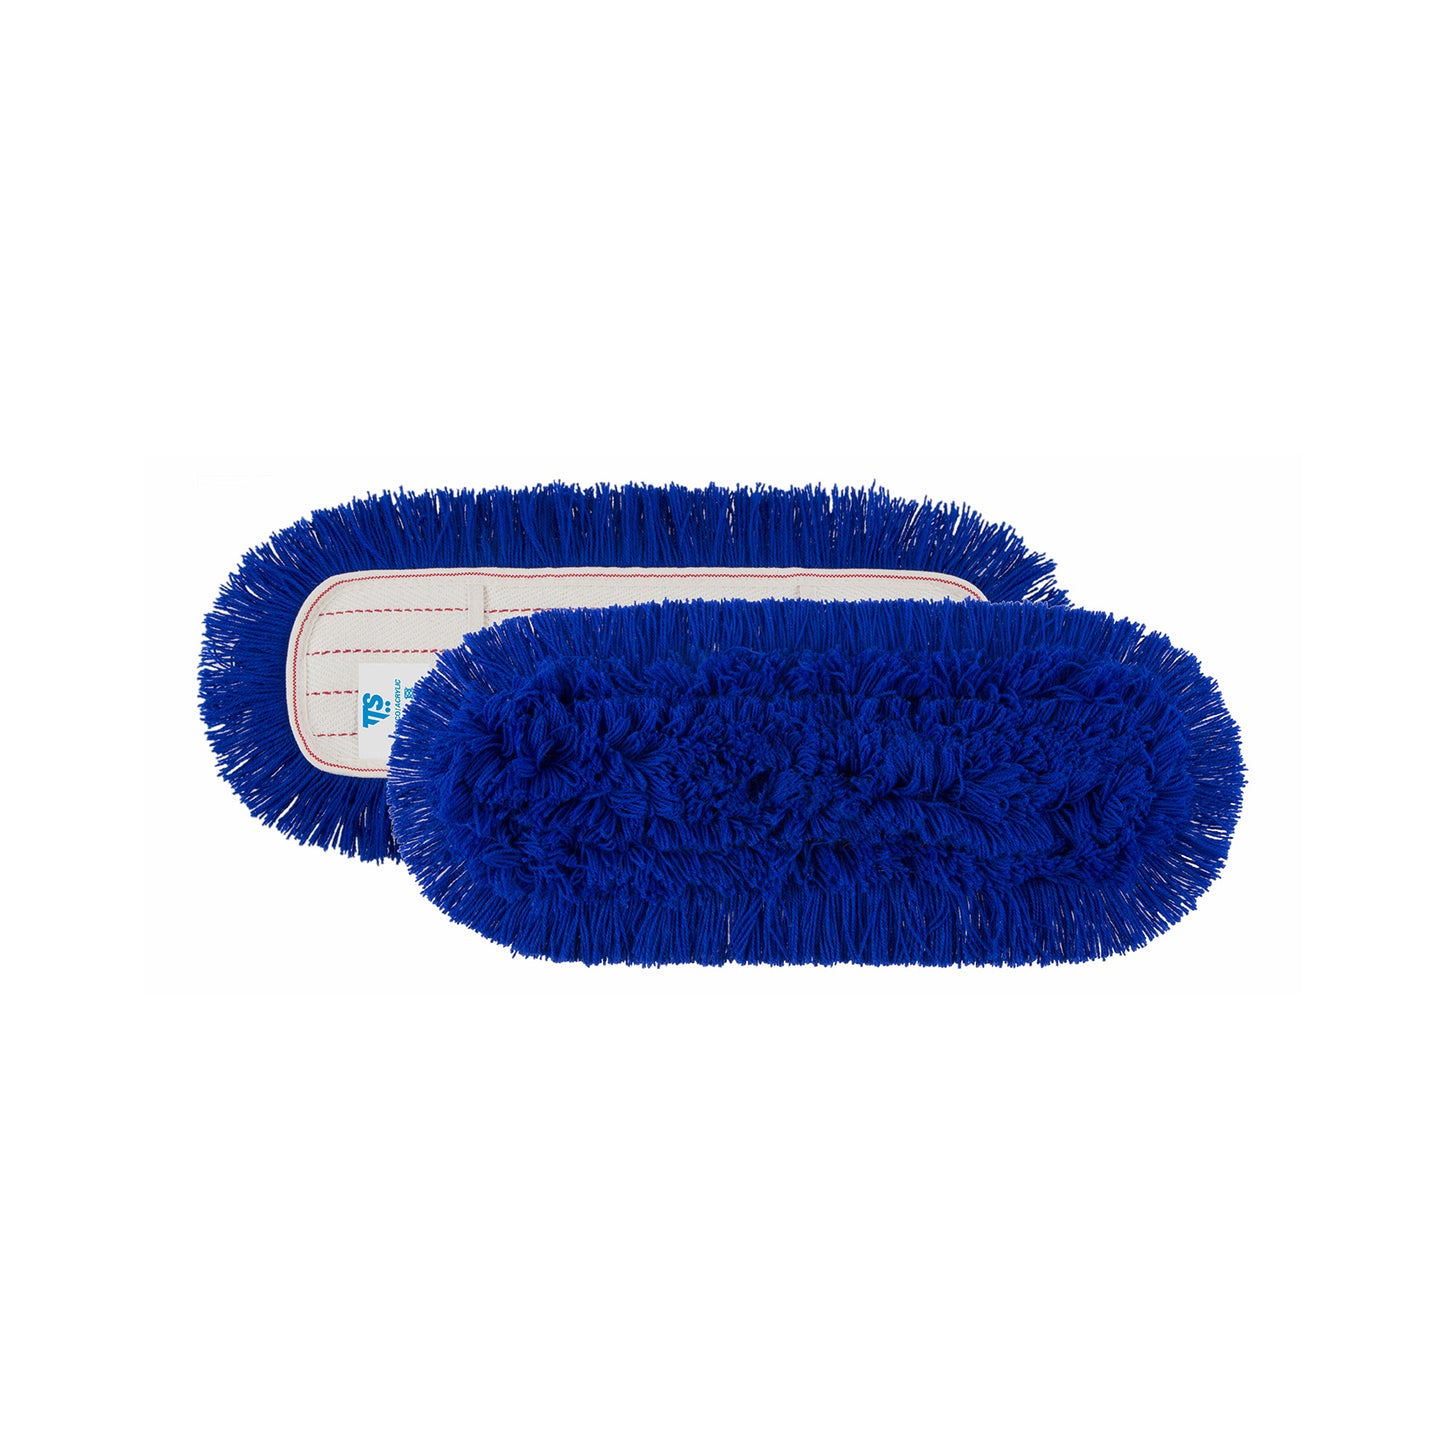 Mopa franja acrílico azul com bolsos e suportes em algodão. Sistema de limpeza de piso com esfregões de poeira. Ideal para qualquer tipo de sujeira e superfície. 80*13CM